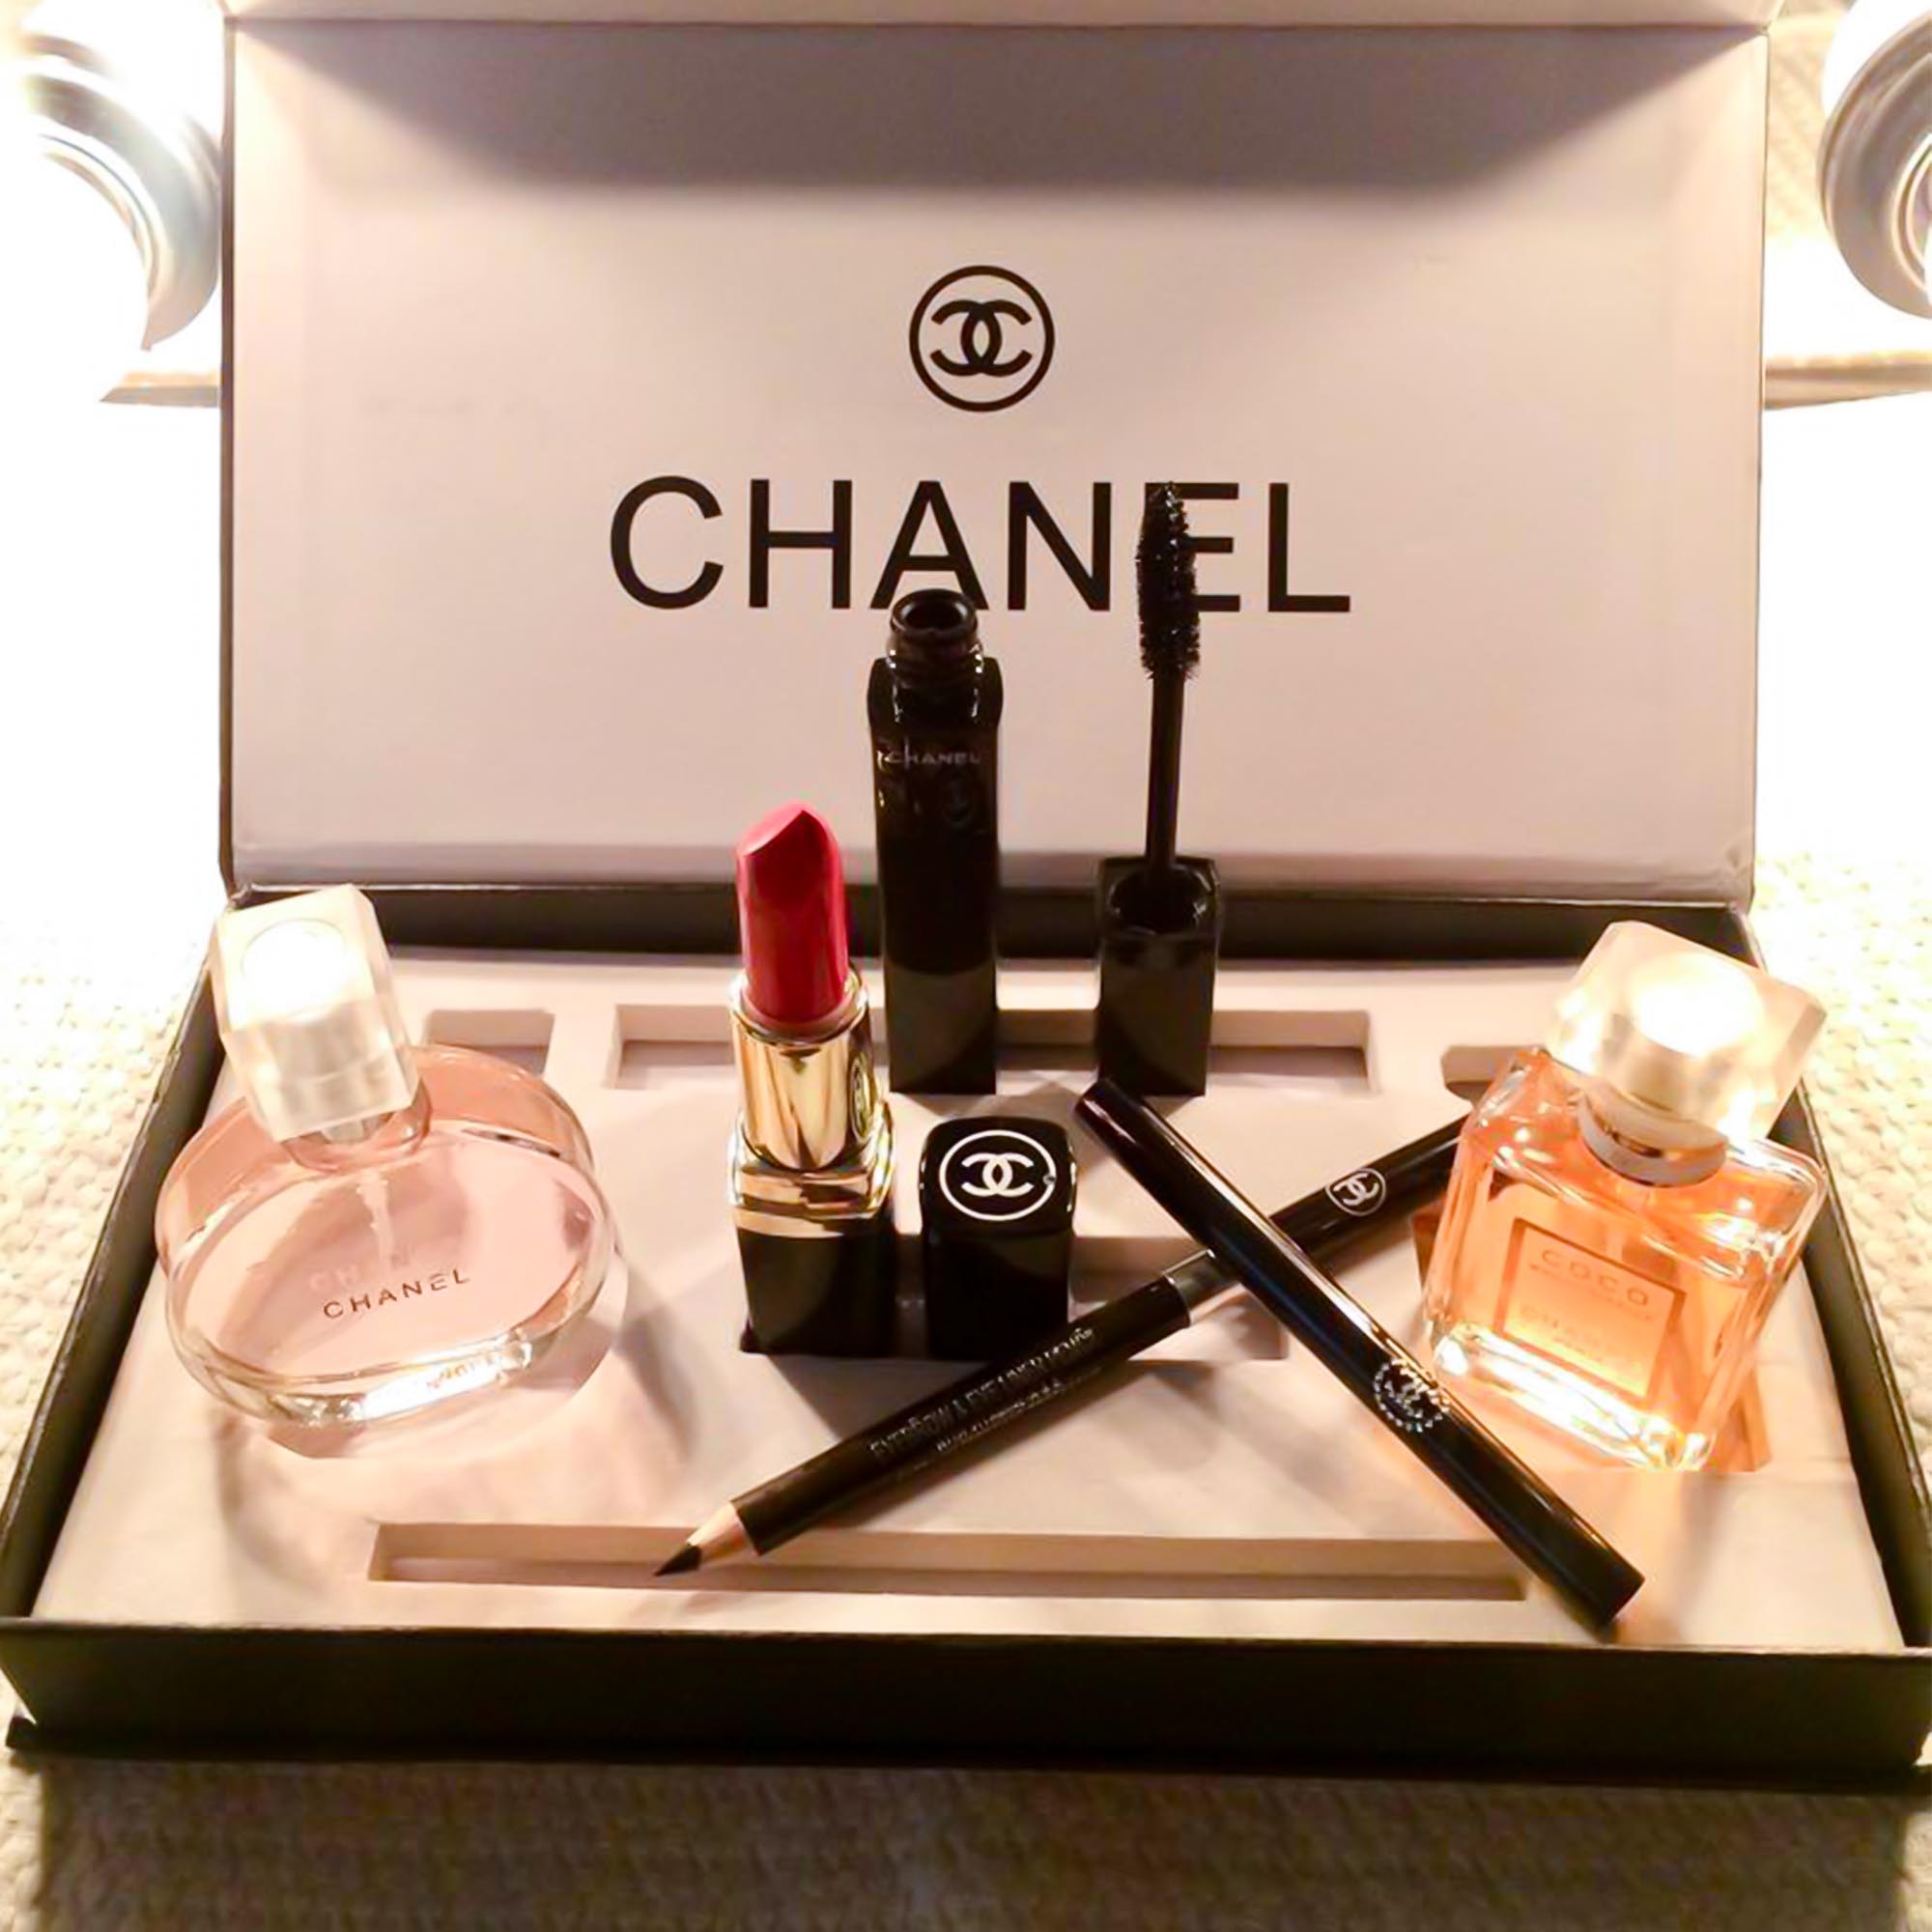 Chia sẻ với hơn 69 chanel perfume gift sets siêu đỉnh  trieuson5